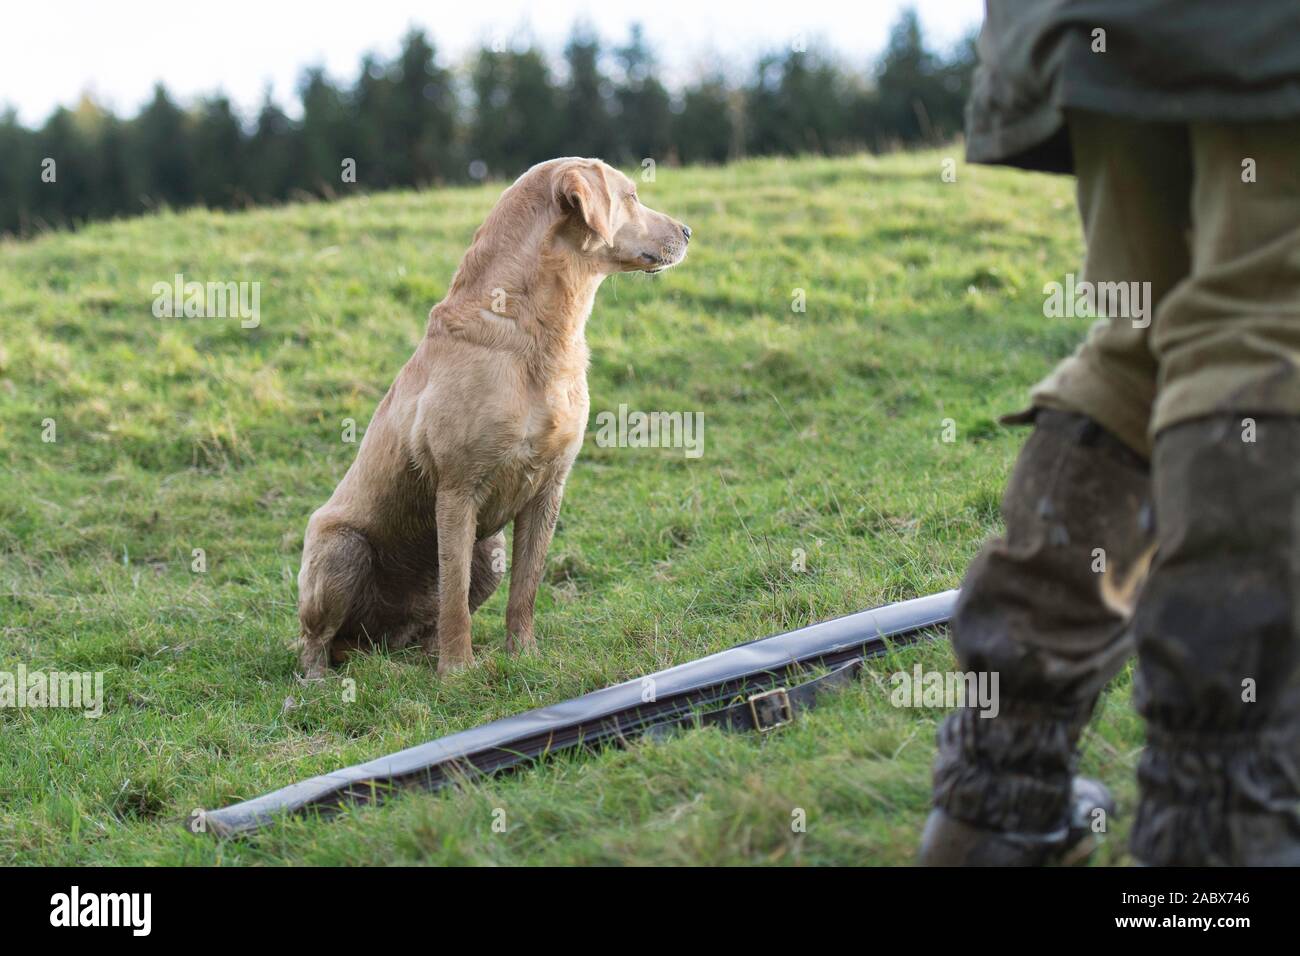 golden Labrador on peg at a shoot Stock Photo